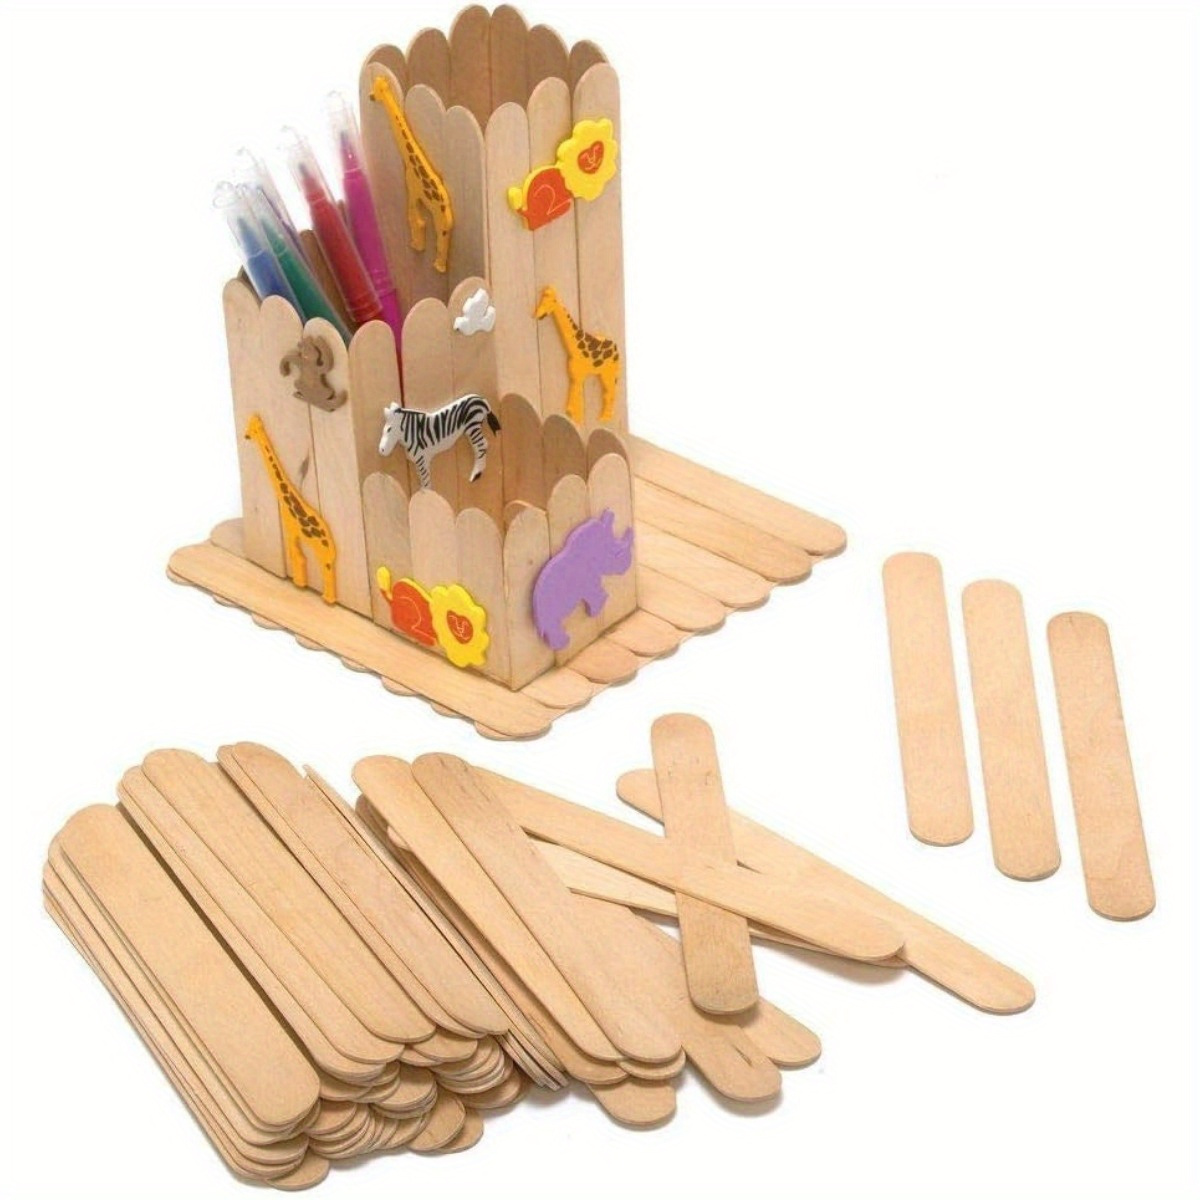 Trimming Shop Wooden Color Lollipop Sticks 5.9 inch, Wood Craft Sticks,  Lolly Sticks for Crafts, Coloured Popsicle Sticks, DIYArts Art Supplies -  300pcs 